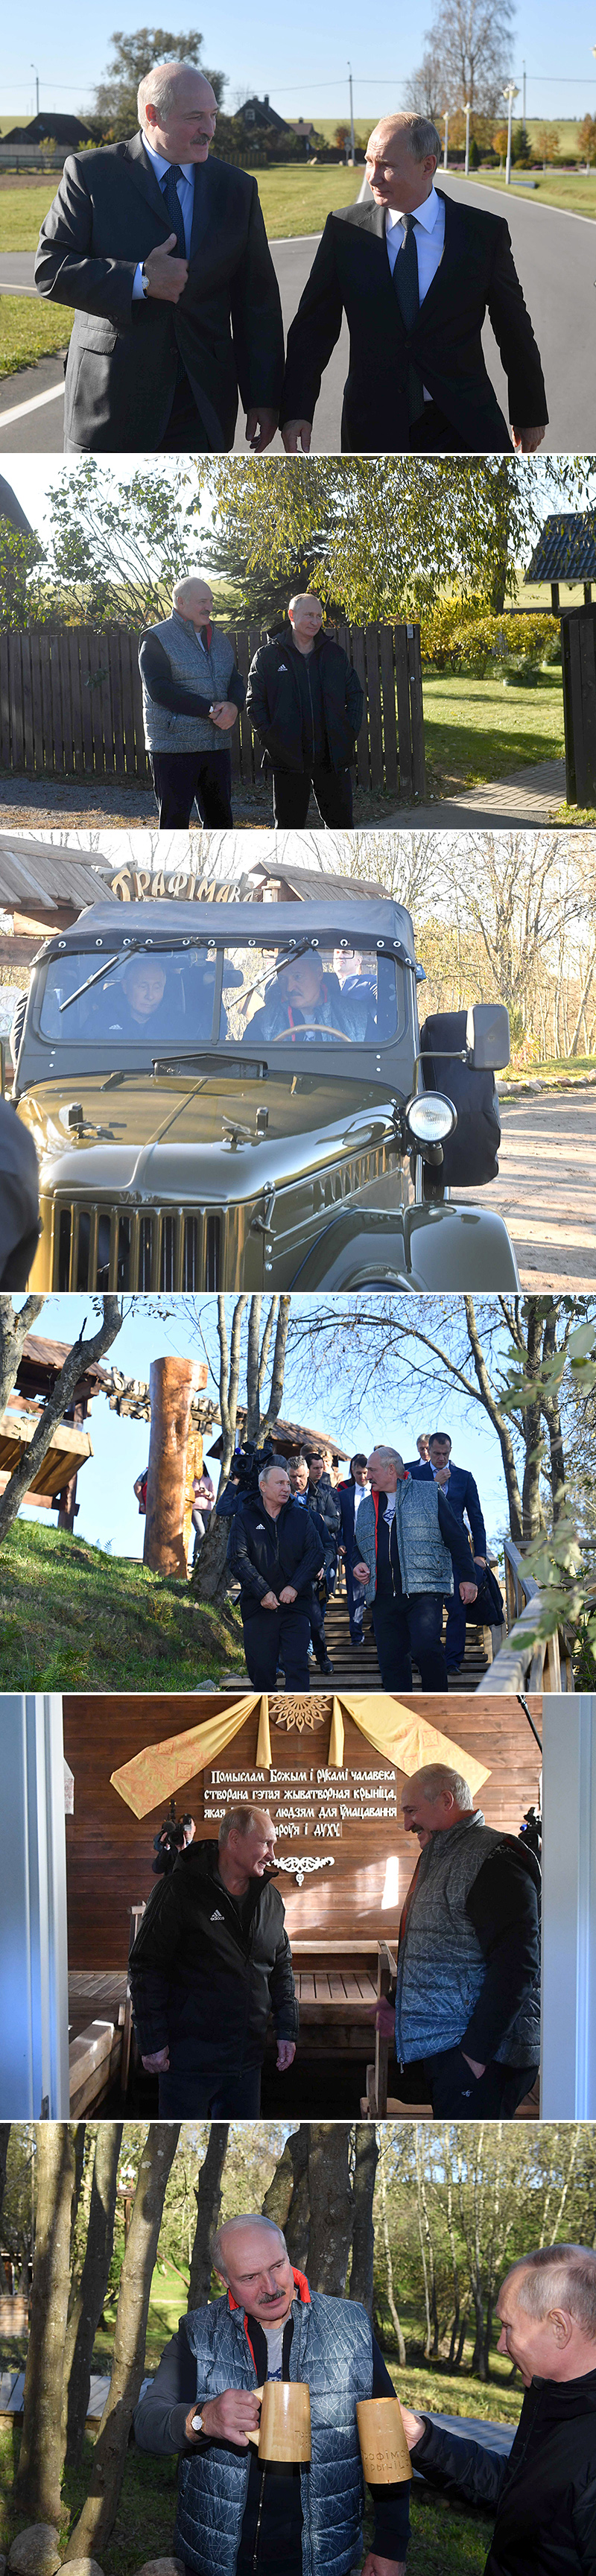 亚历山大•卢卡申科和弗拉基米尔•普京访问了白罗斯总统的乡梓